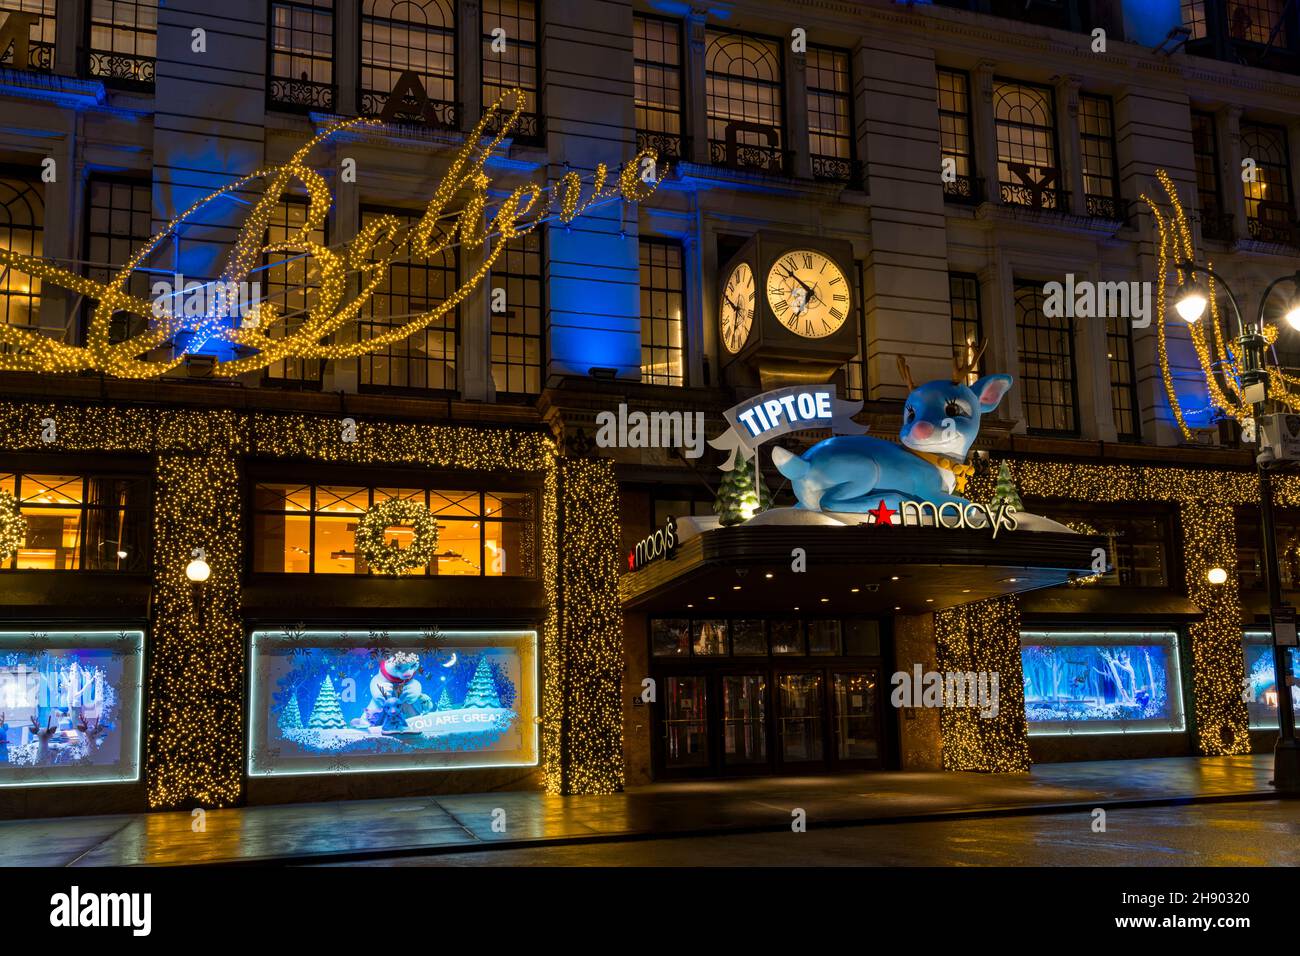 Macy's Herald Square ist das Flaggschiff des Kaufhauses Macy's zu Weihnachten. Blick vom Broadway. Manhattan, New York, USA, 2021 Stockfoto